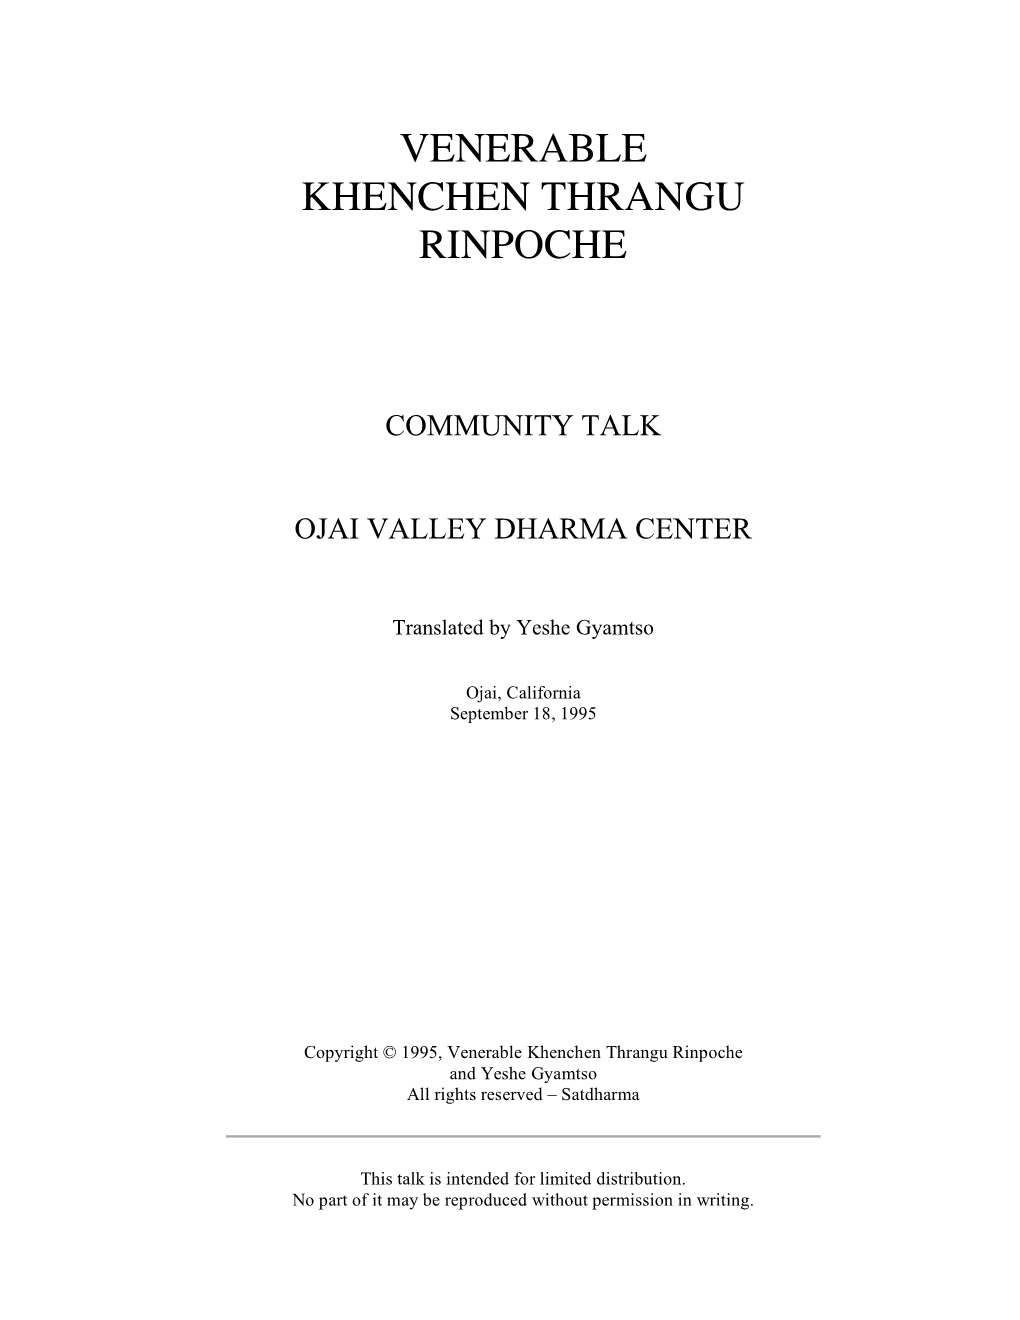 Venerable Khenchen Thrangu Rinpoche